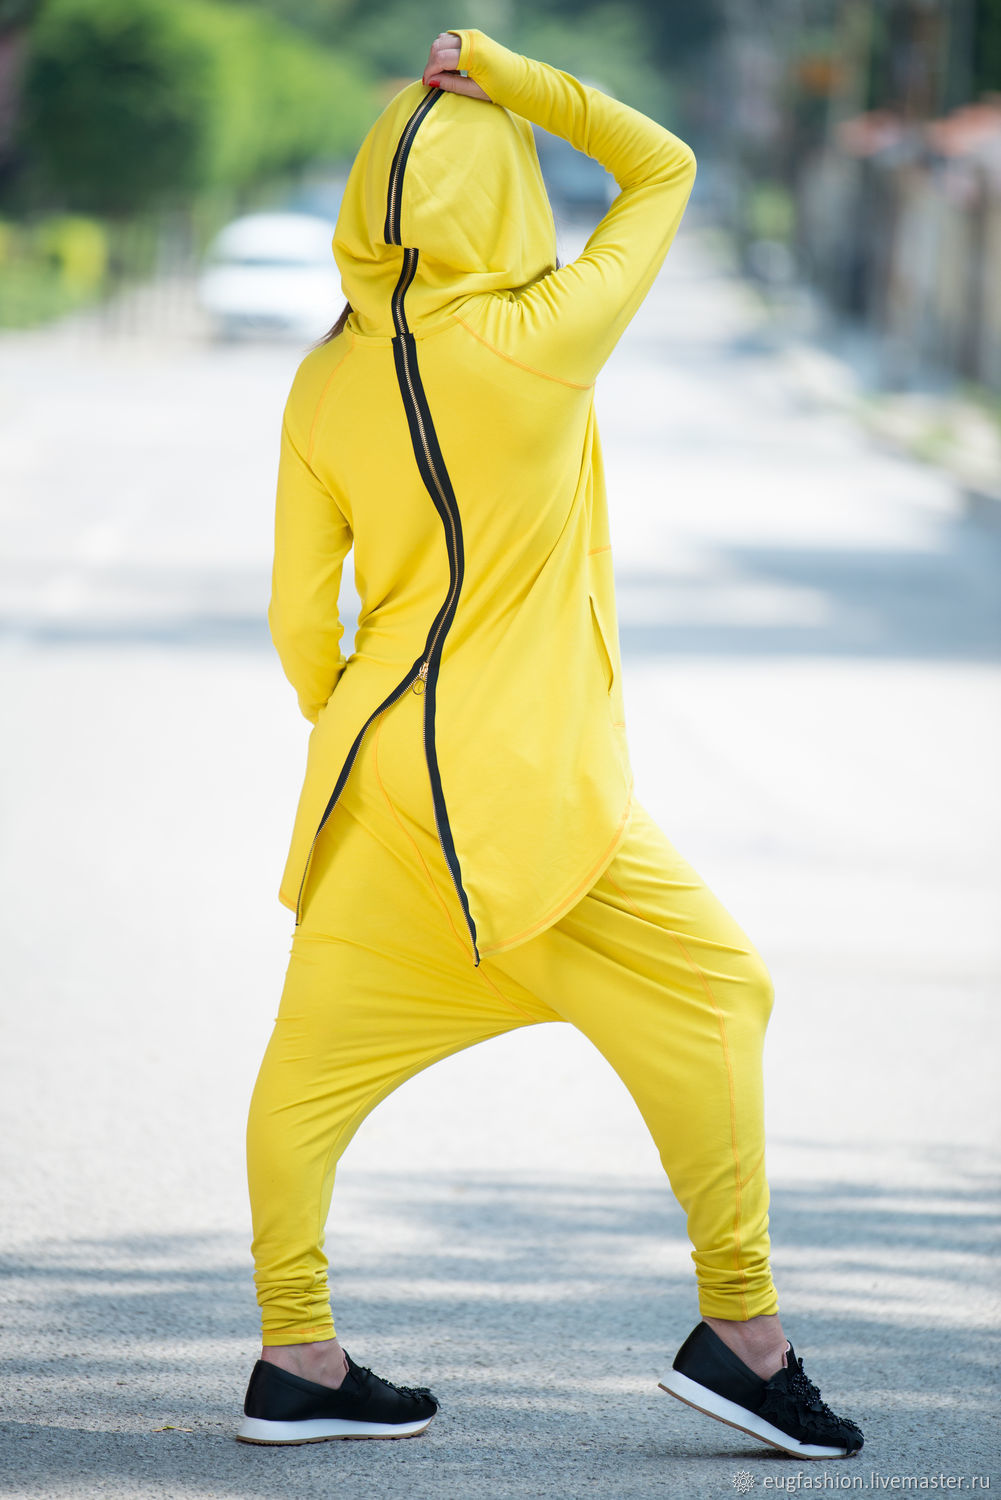 Найти спортивные костюм. Спортивный костюм адидас женский желтый. Желтый костюм адидас женский. Необычные спортивные костюмы. Спортивный костюм с капюшоном.